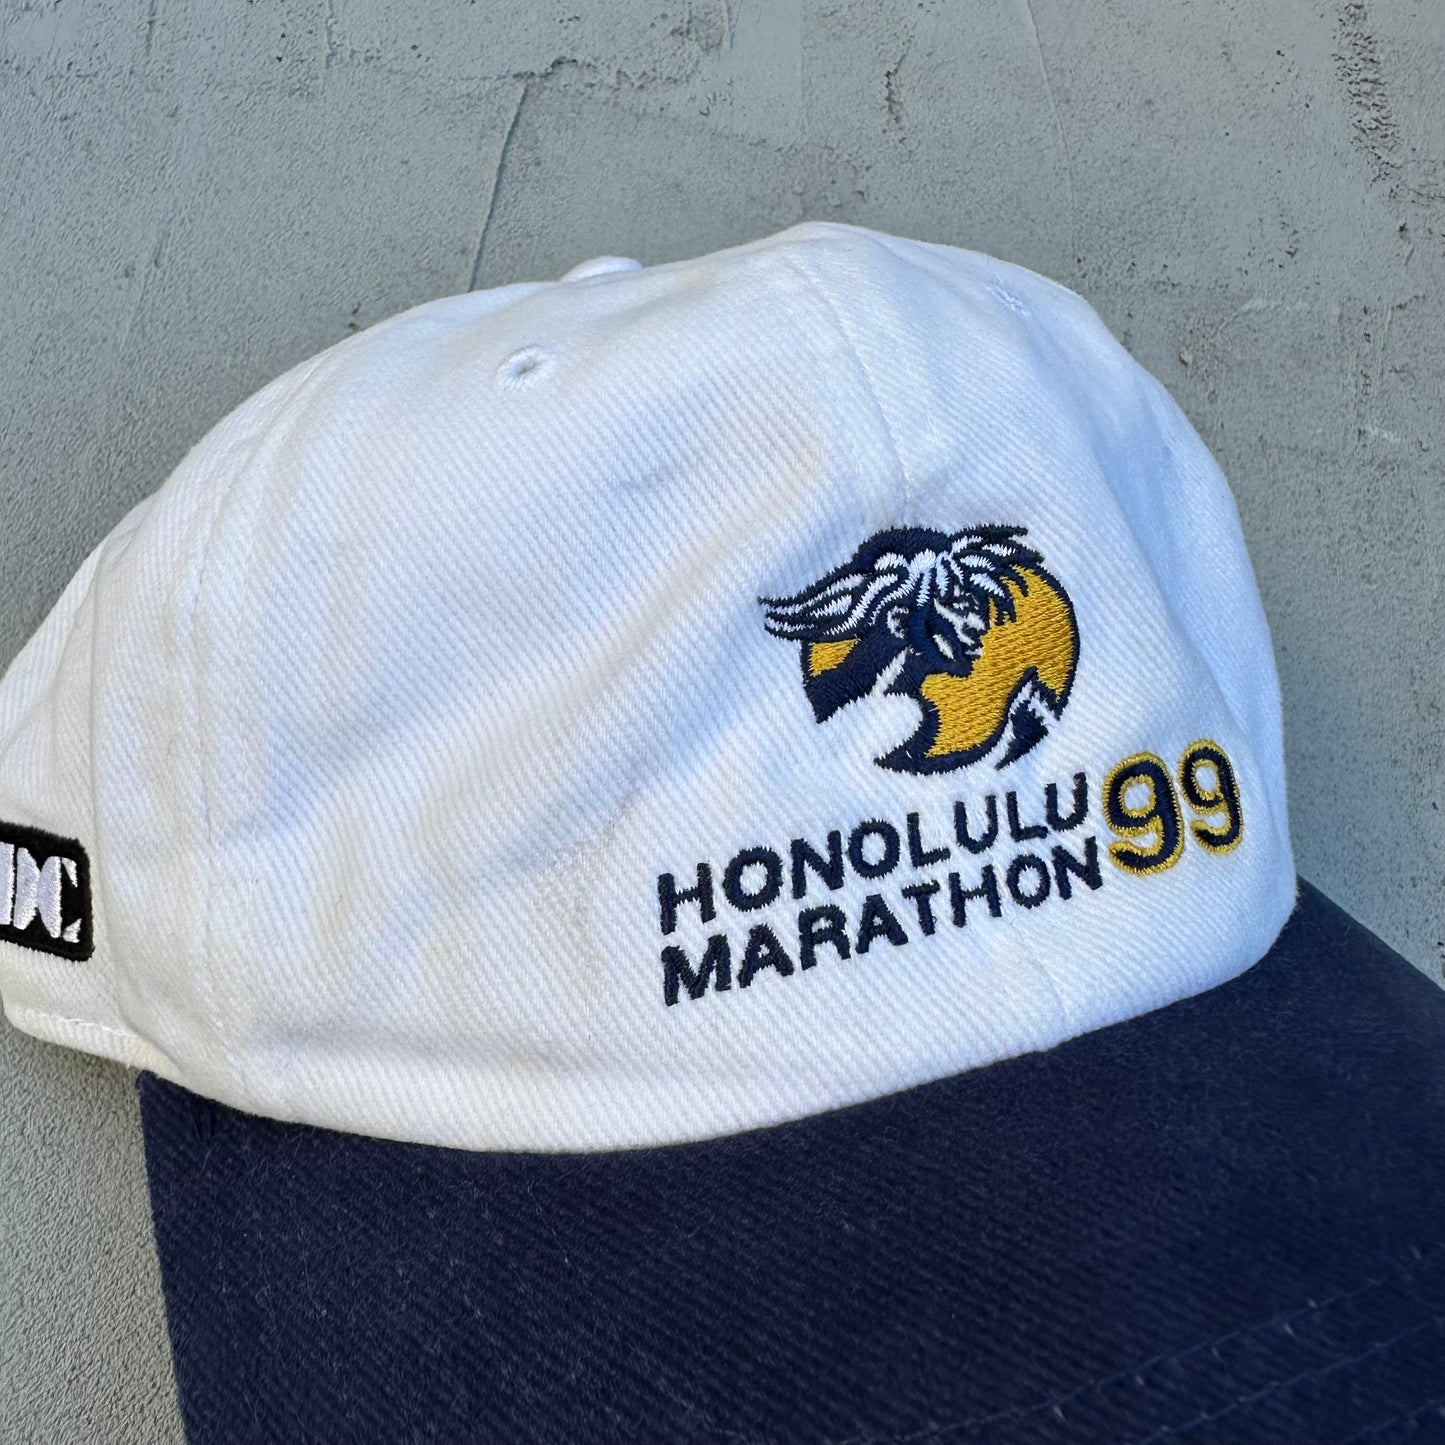 Vintage Nike Honolulu Marathon Hawaii 1999 Hat